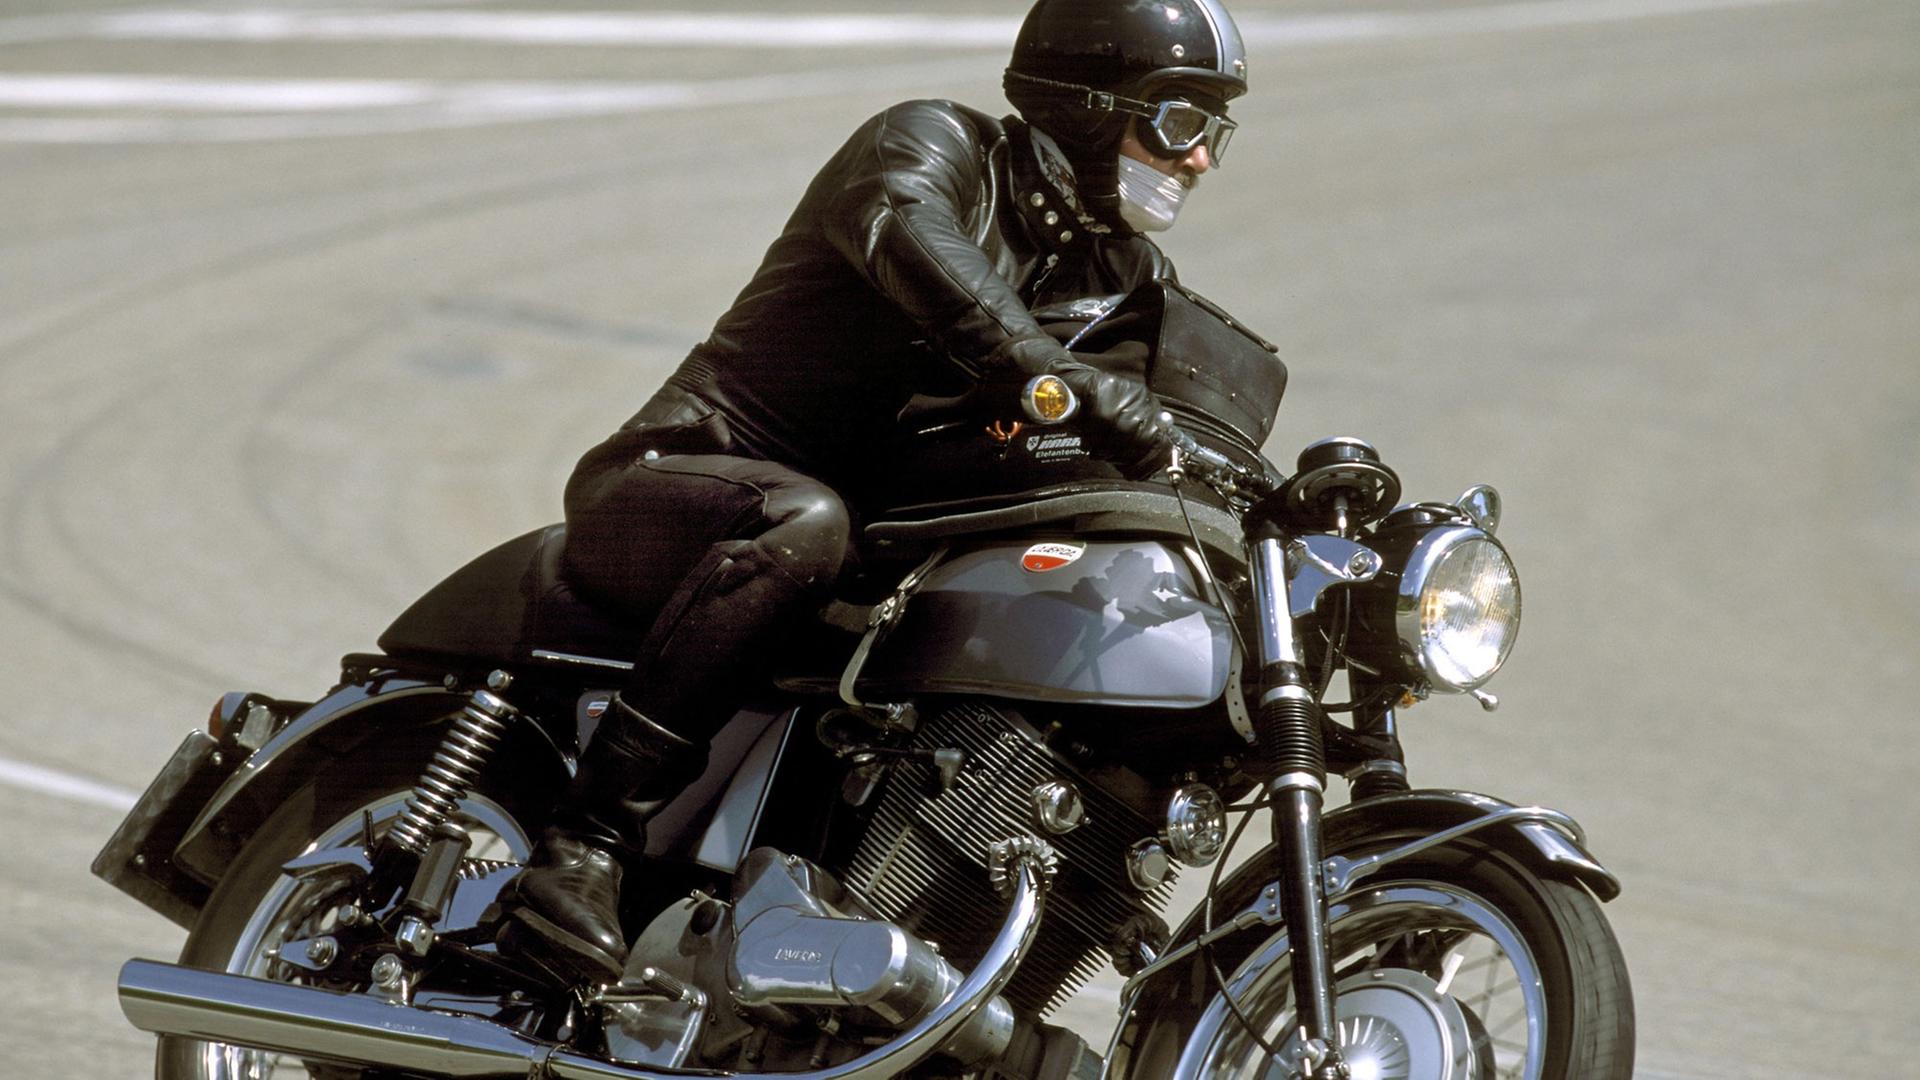 Auf dem Bild sieht man einen Motorradfahrer, der am Großen Feldberg in eine Kurve fährt. Das Motorrad ist eine restaurierte Laverda.